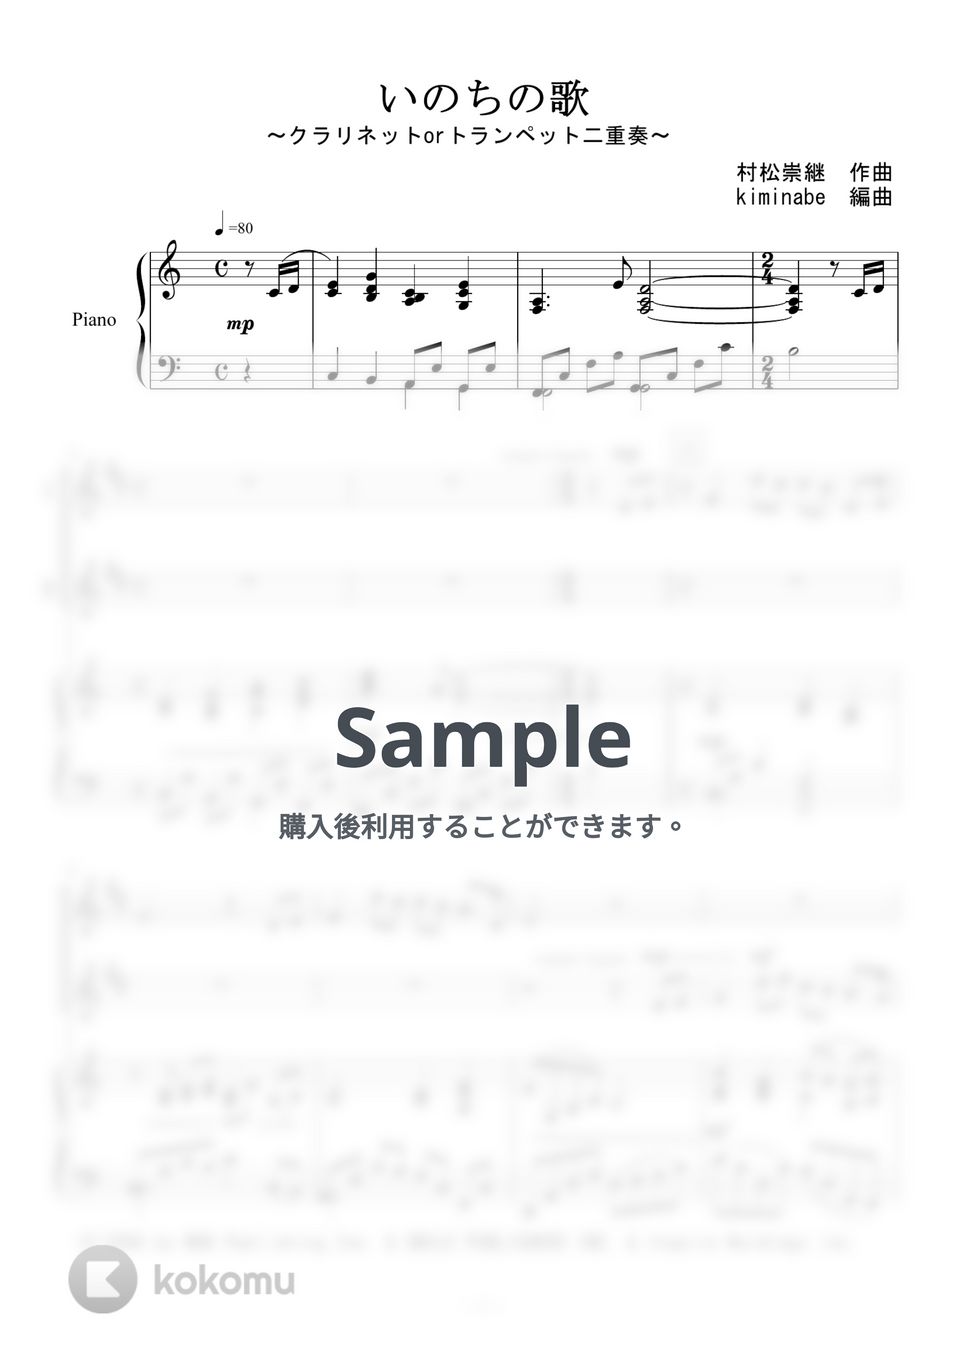 竹内まりや - いのちの歌 (クラリネットorトランペット二重奏) by kiminabe